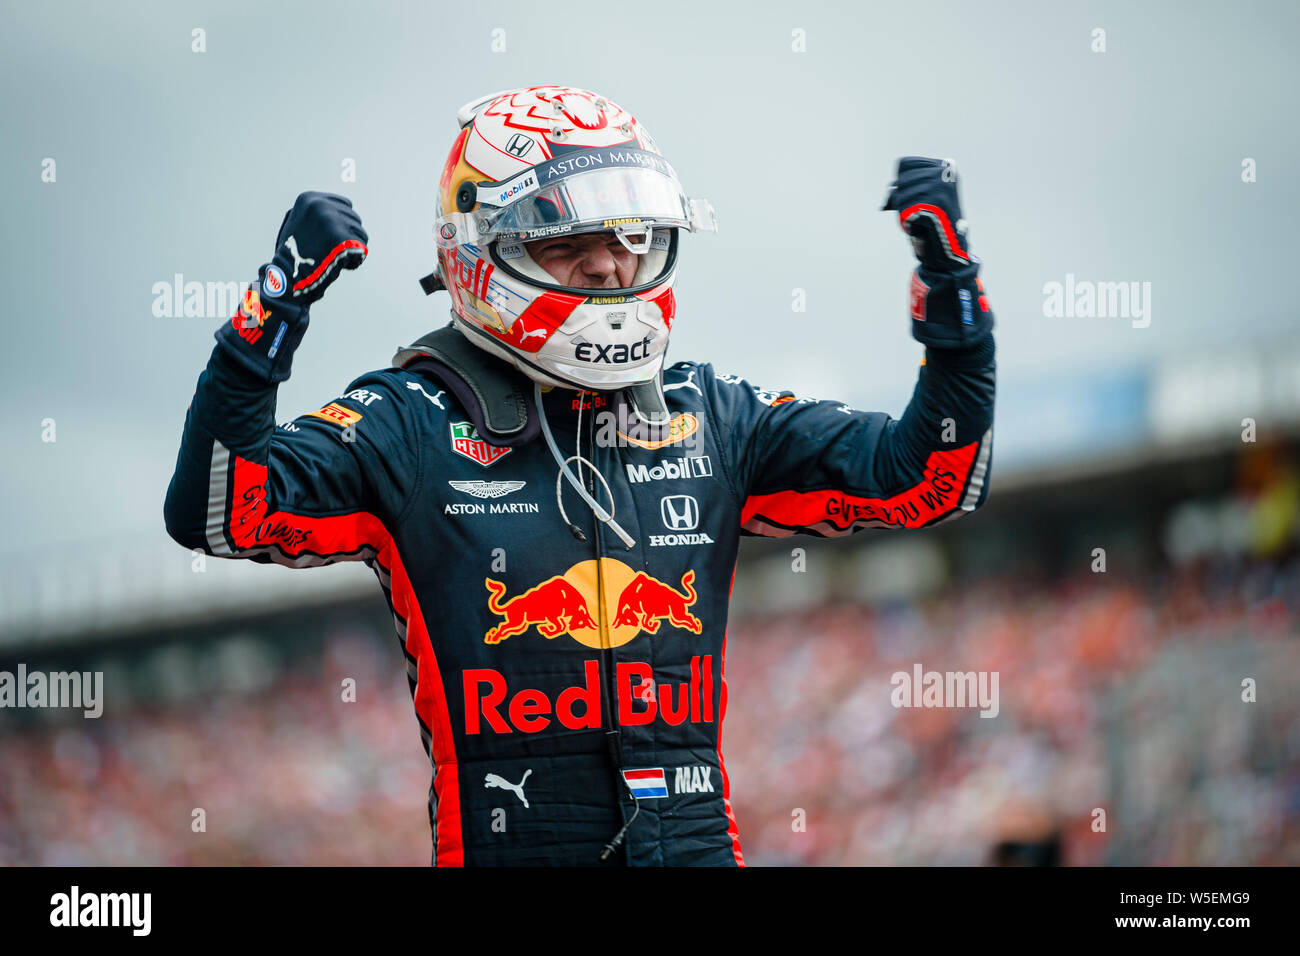 Hockenheim, Alemania. 28 de julio de 2019. Red Bull Racing El piloto holandés Max Verstappen celebra después de ganar el premio alemán de F1 Grand Prix Race. Crédito: Sopa de imágenes limitado/Alamy Live News Foto de stock